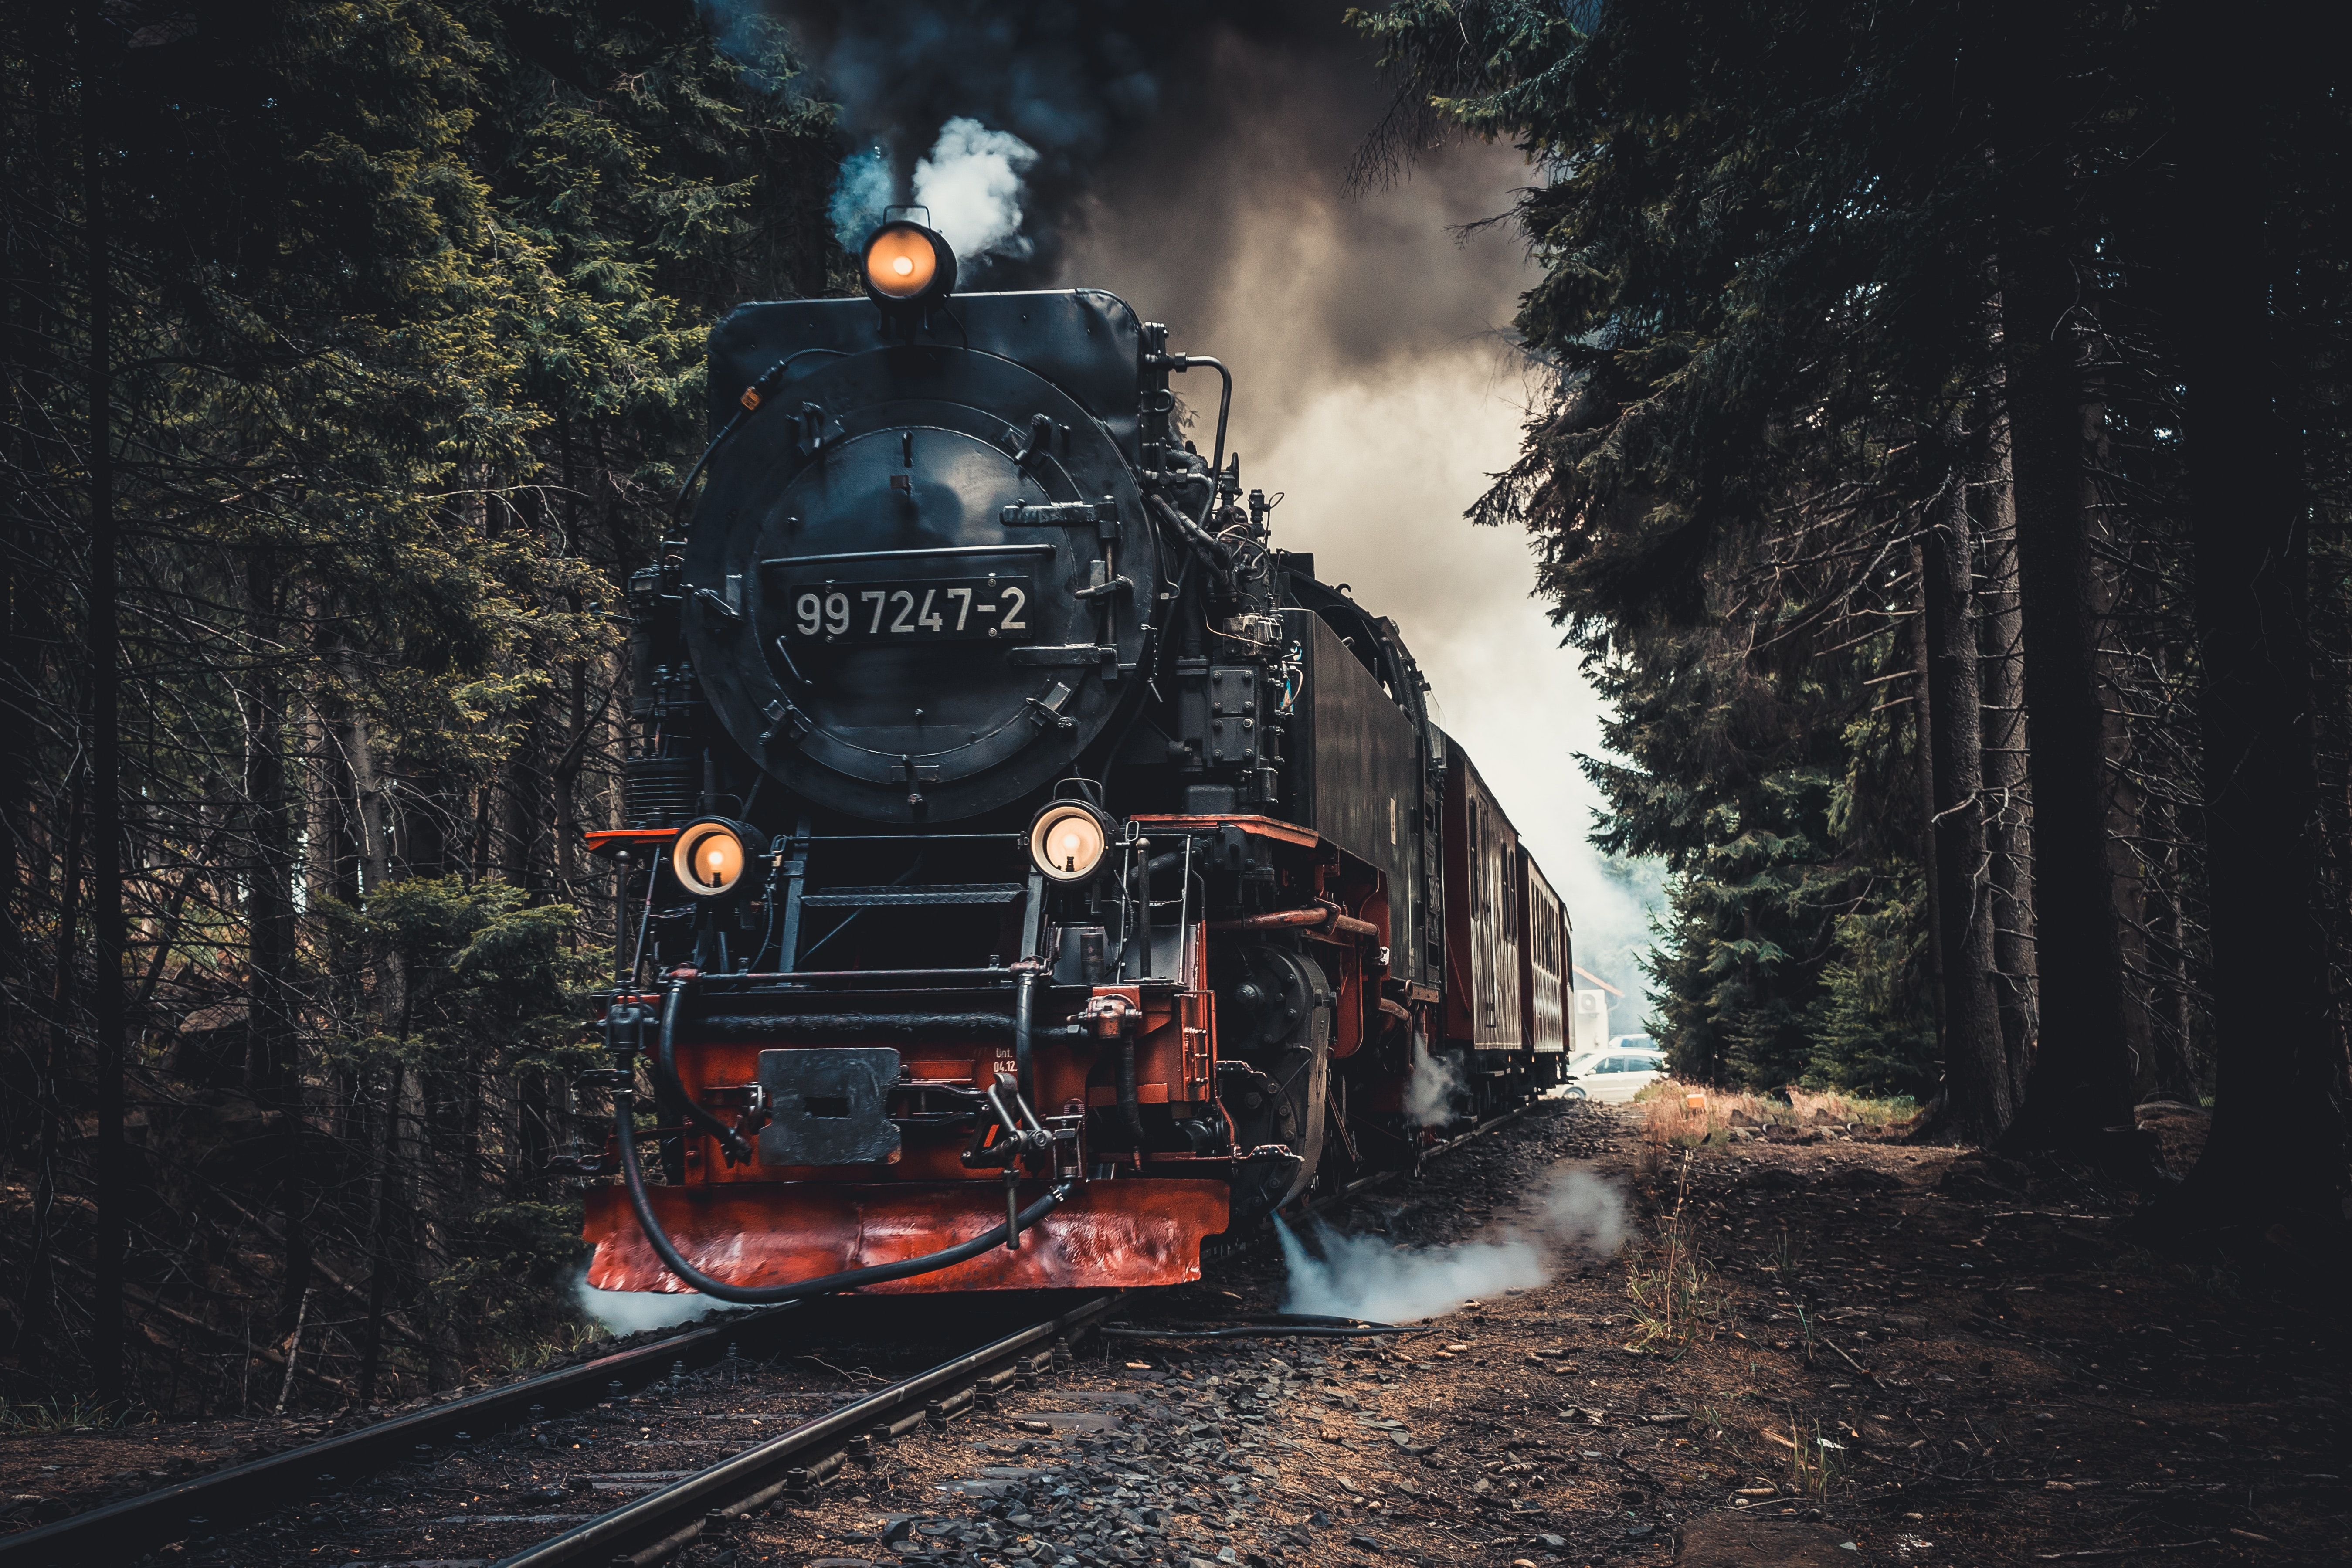  Dampflok Hintergrundbild 5397x3598. 3.Lokomotive Bilder Und Fotos · Kostenlos Downloaden · Stock Fotos